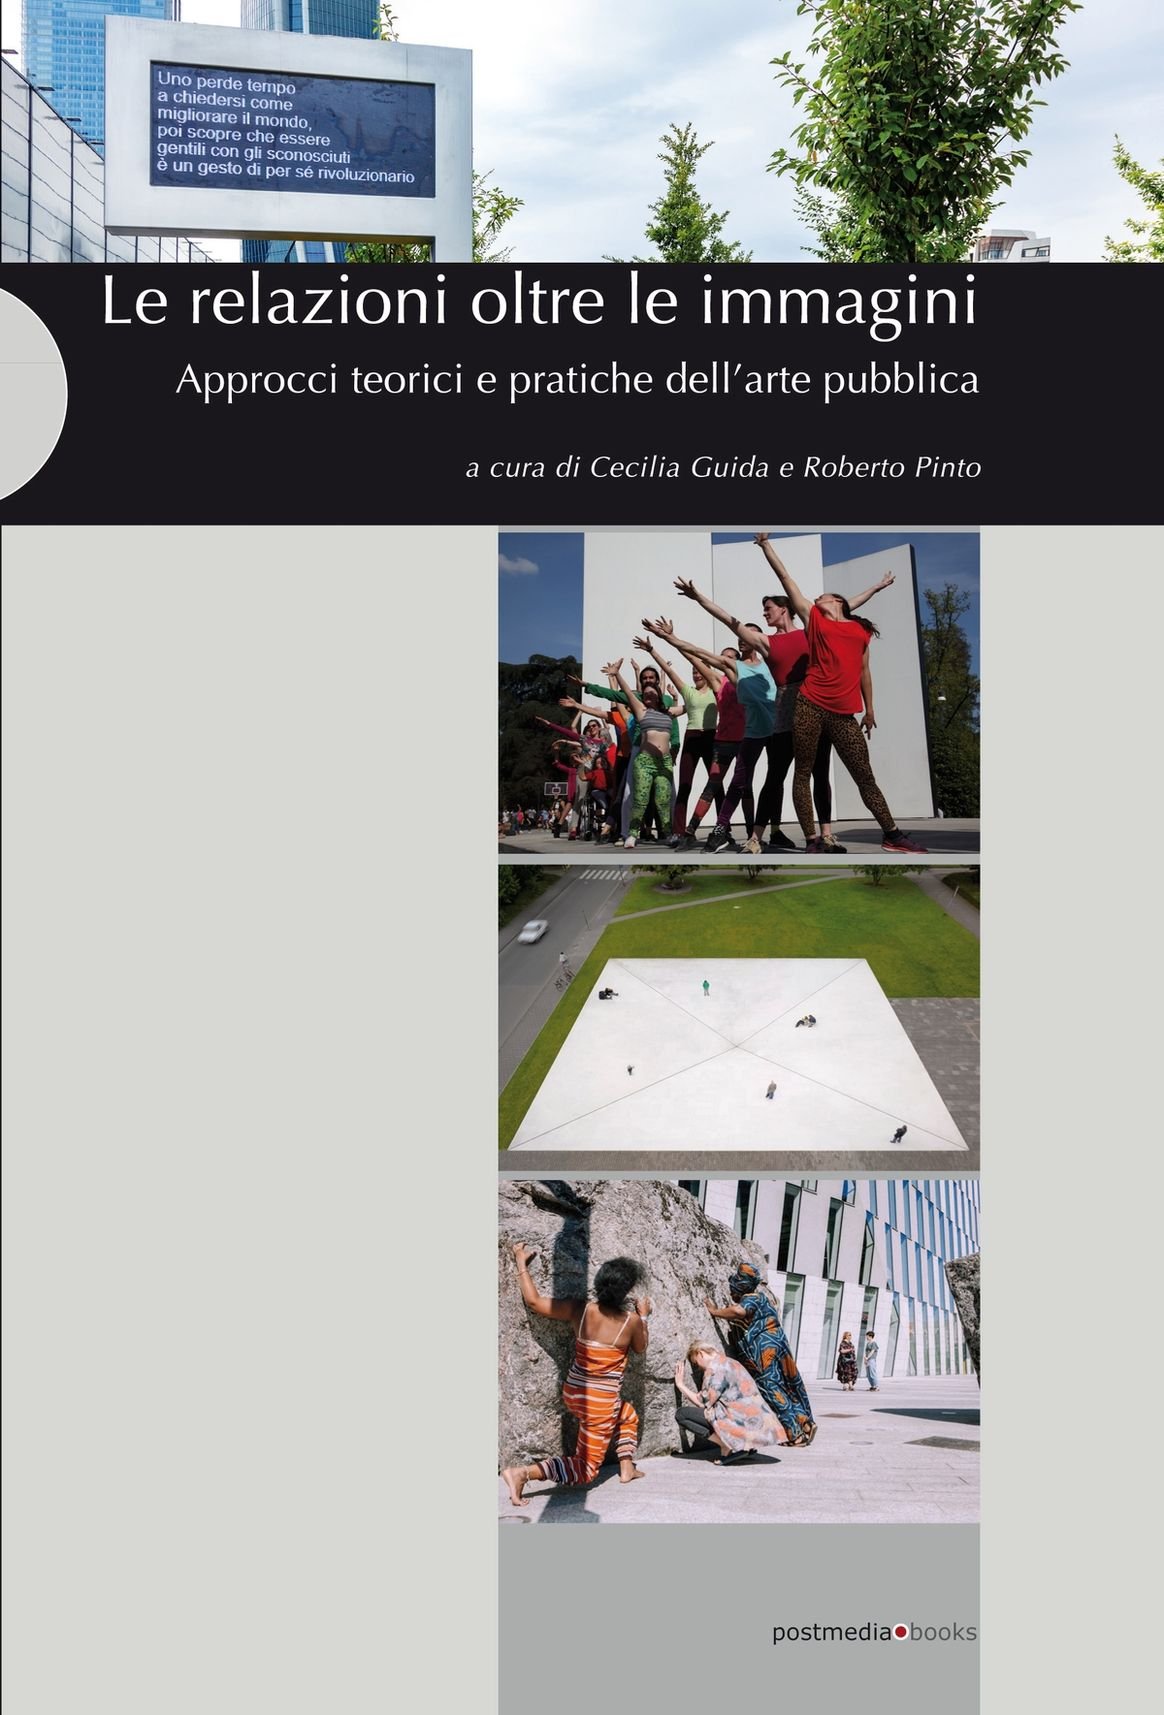 Cecilia Guida e Roberto Pinto, Le relazioni oltre le immagini. Approcci teorici e pratiche dell'arte pubblica